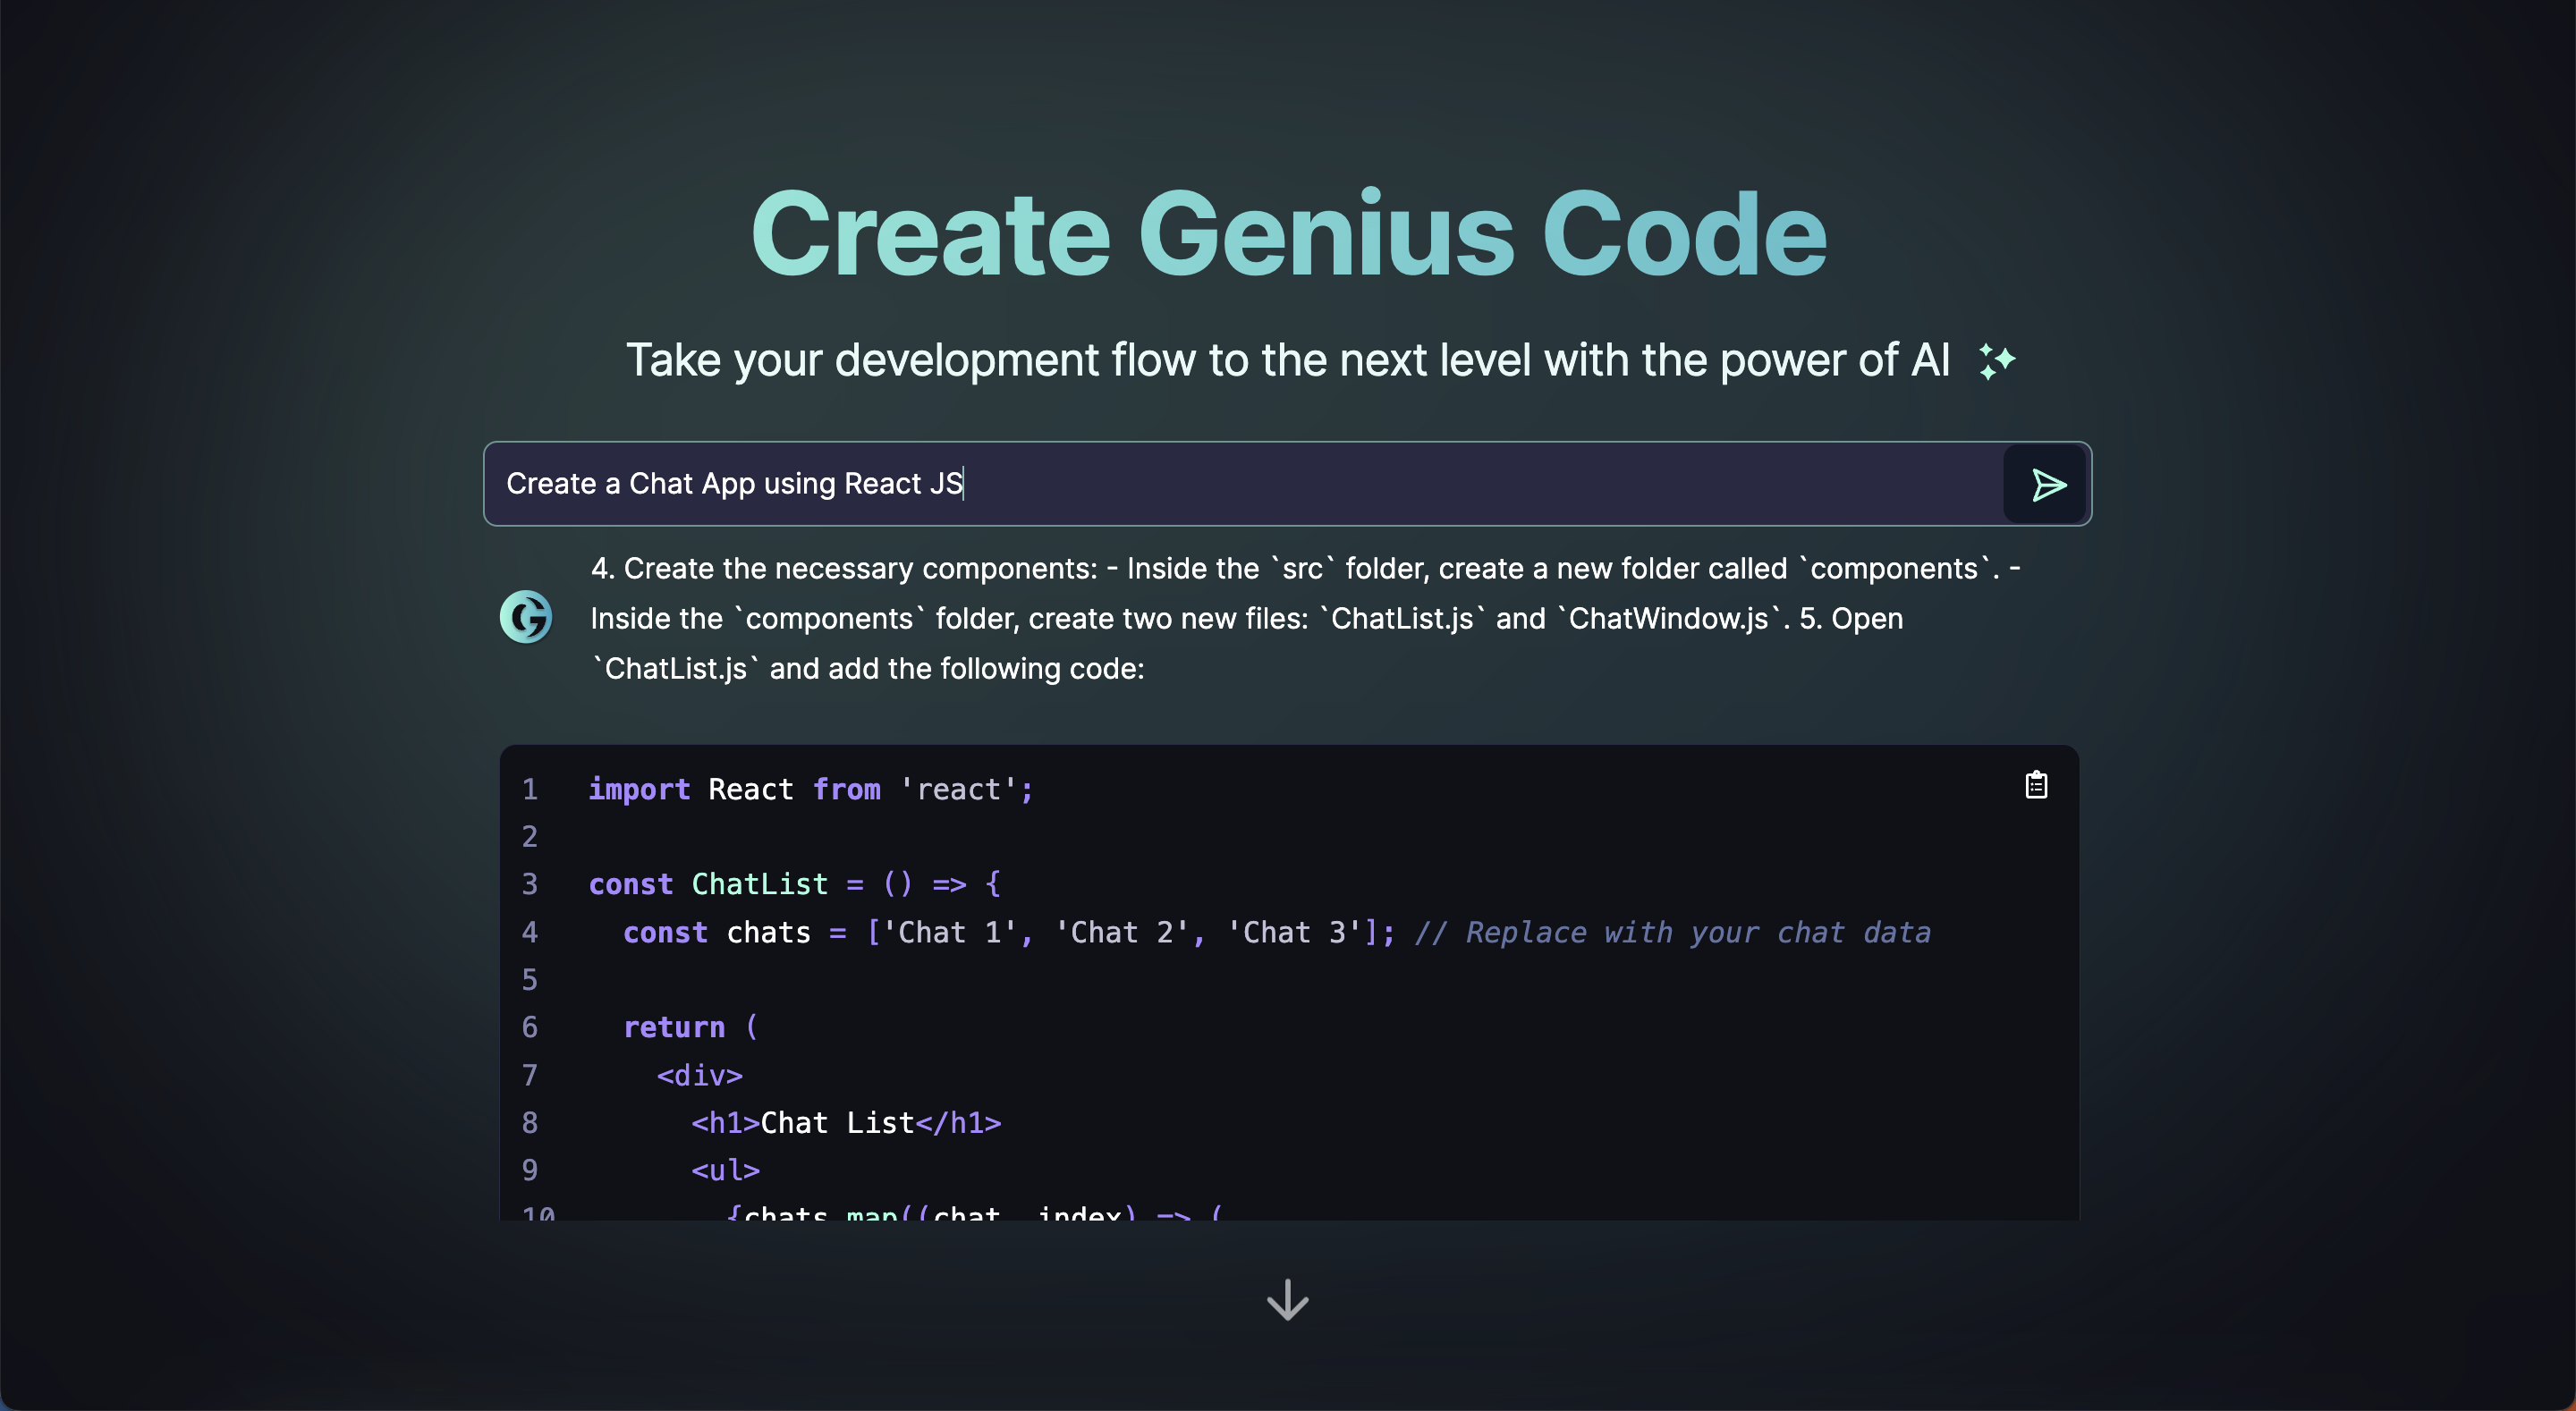 Creating Genius Code